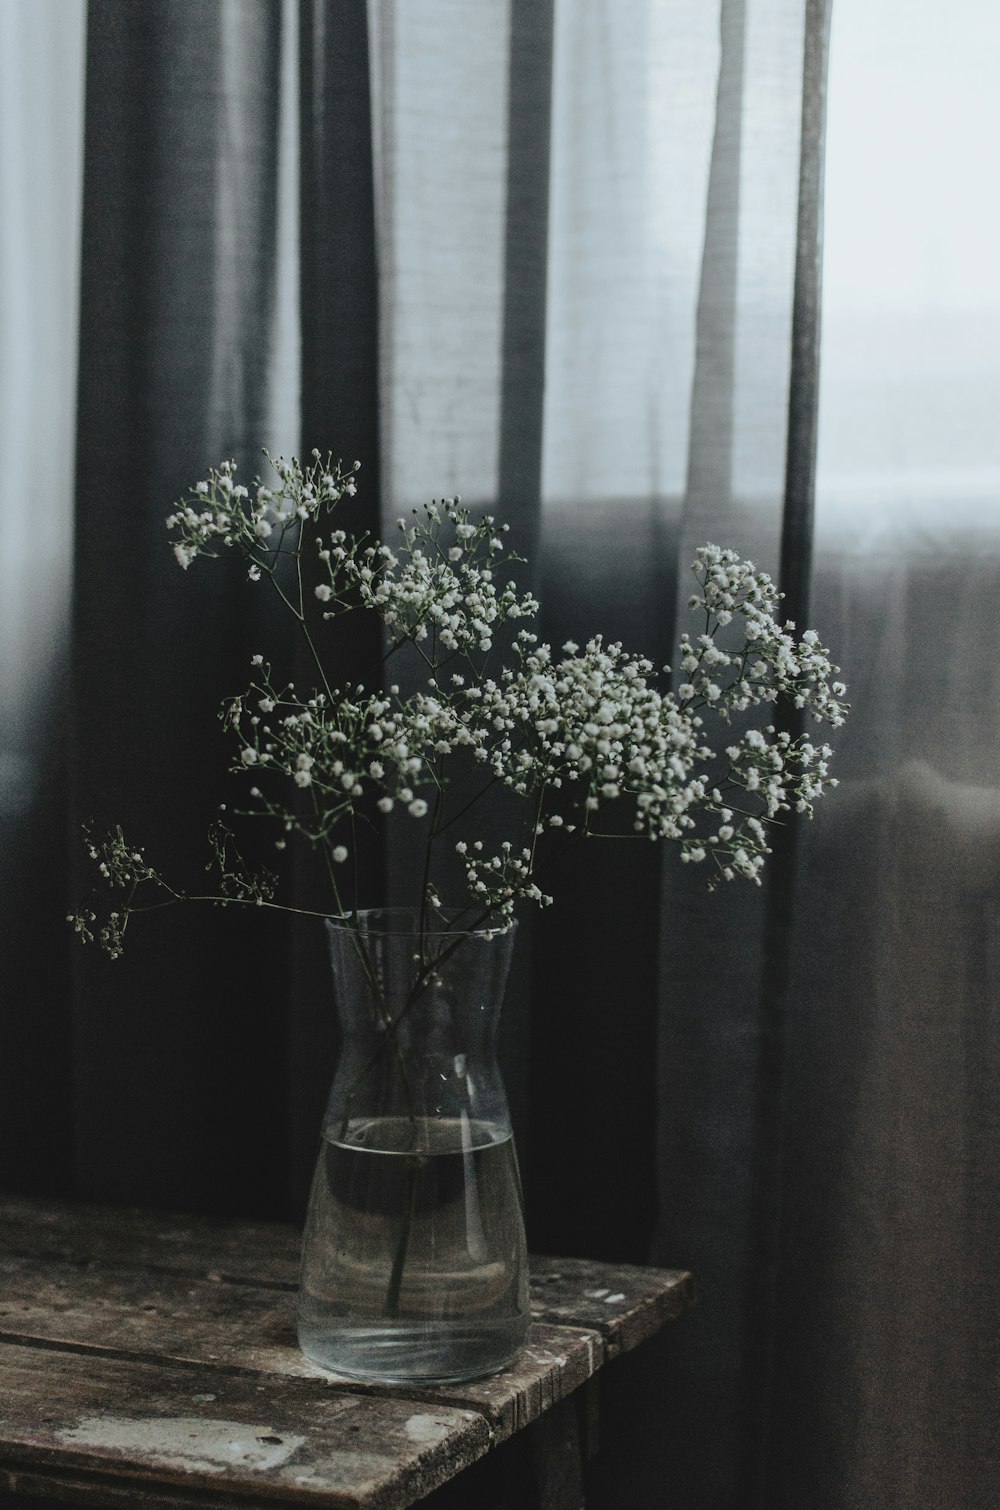 fiori bianchi in vaso di vetro trasparente